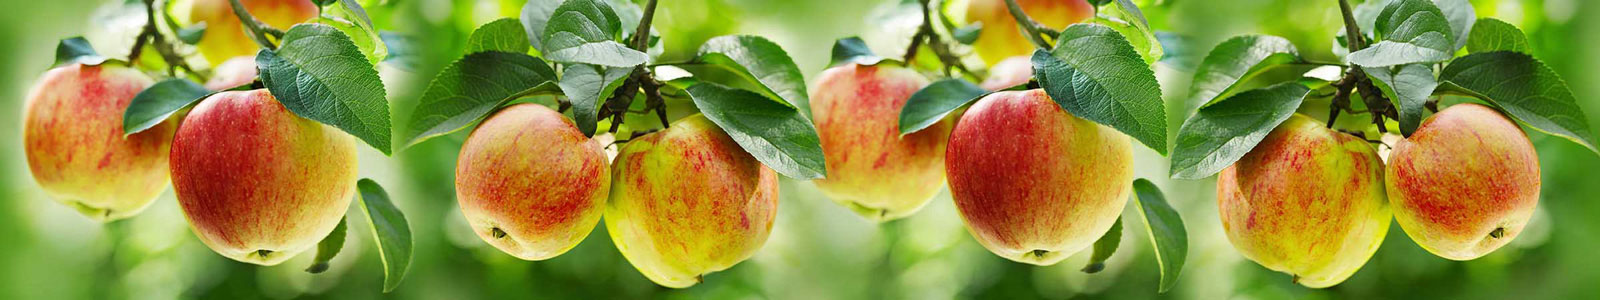 №3434 - Спелые яблоки на деревьях